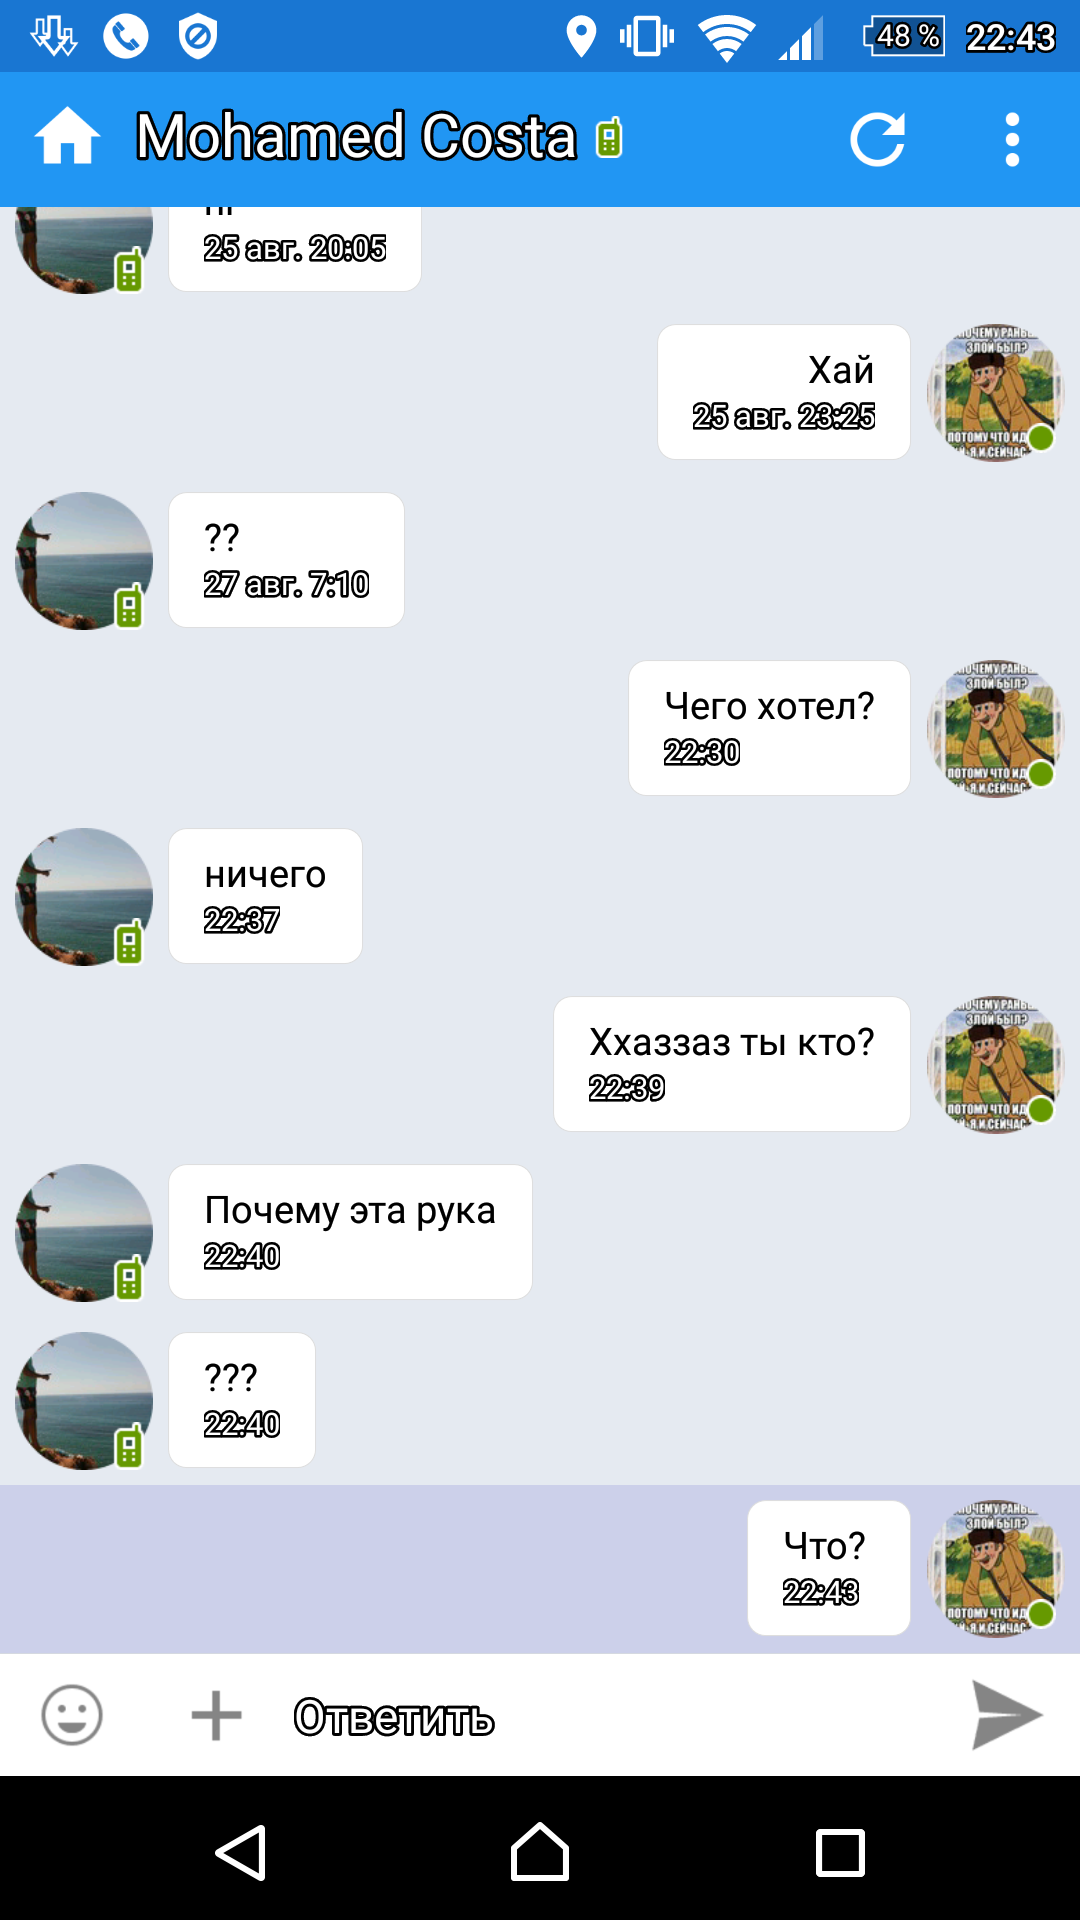 Саяногорск Инфо - screenshot_20160828-224352.png, Скачано: 518